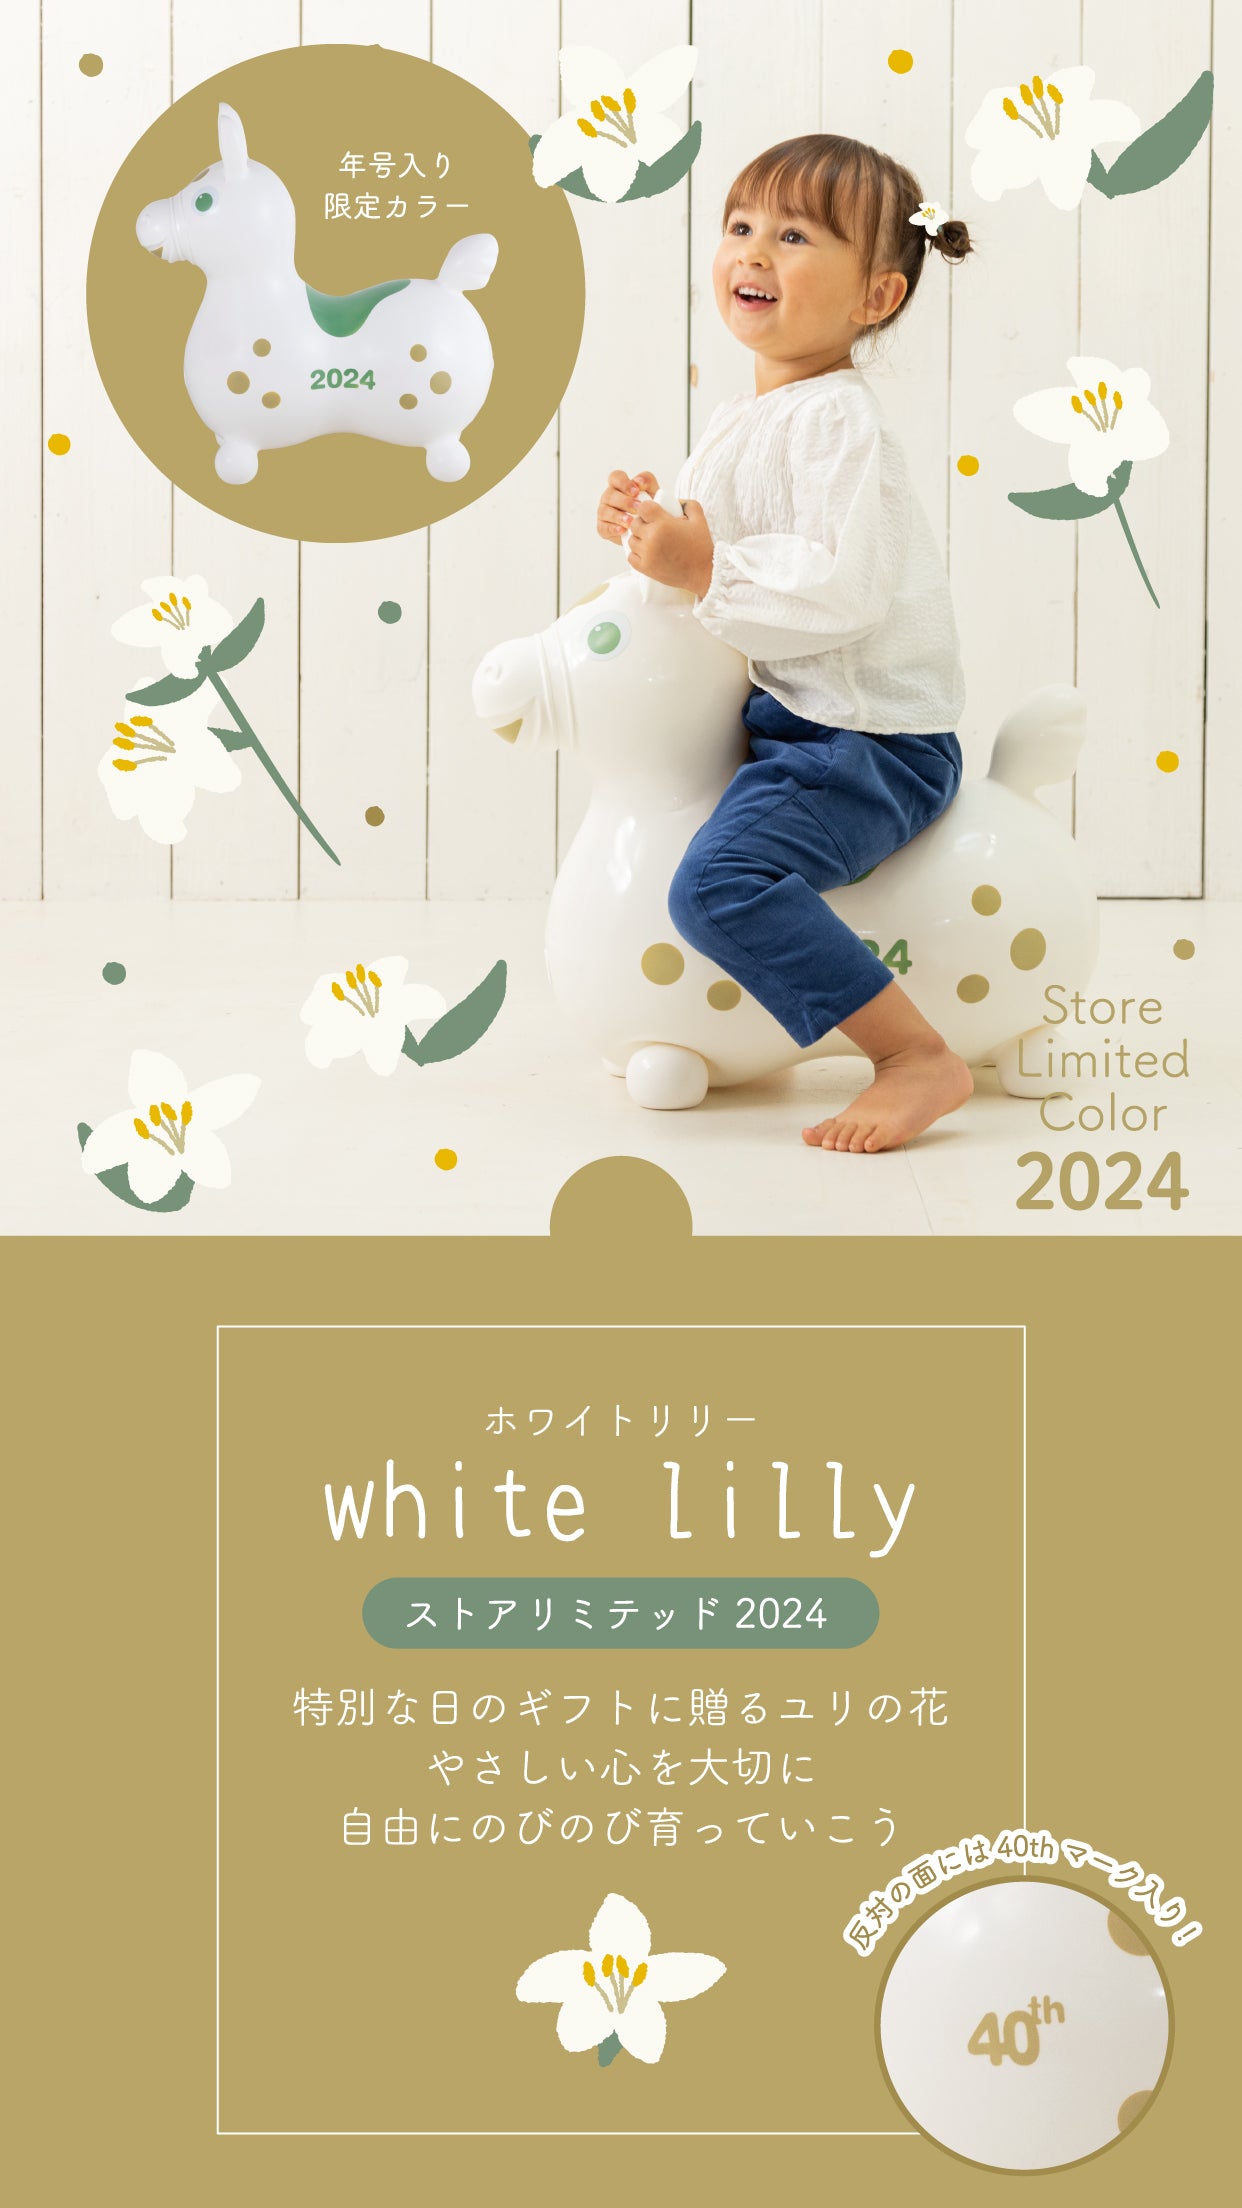 whitelilly